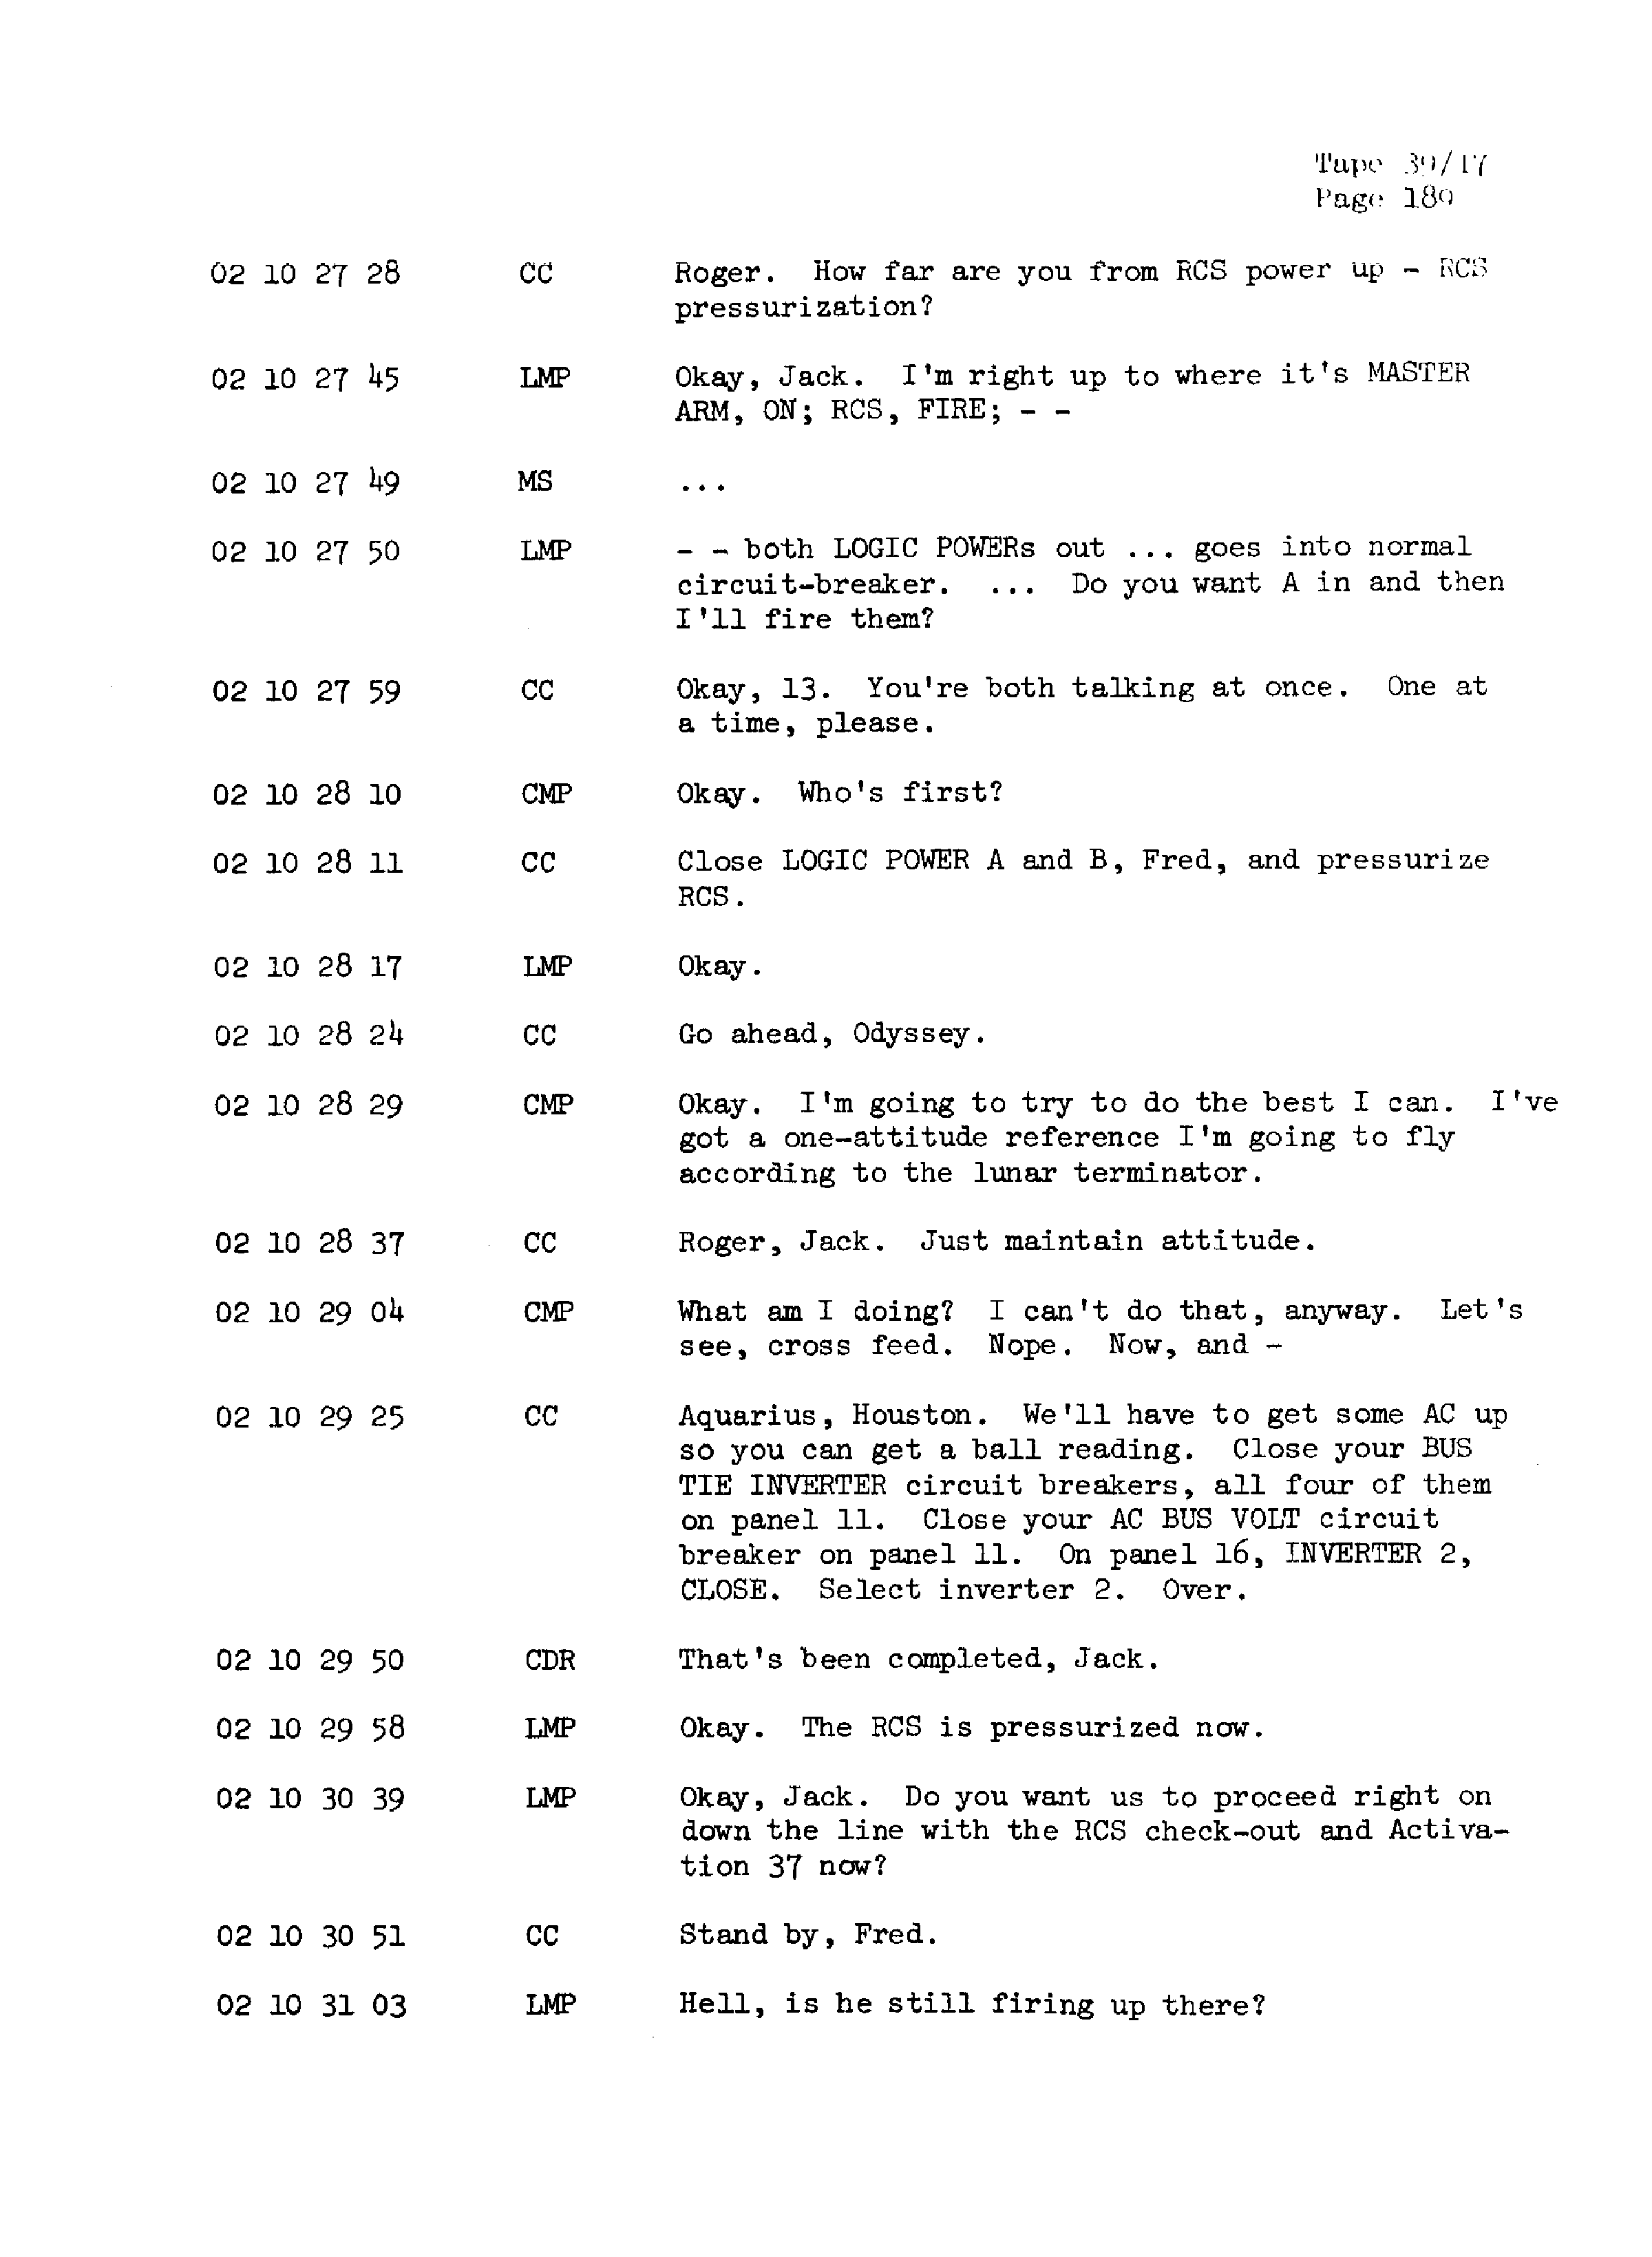 Page 196 of Apollo 13’s original transcript